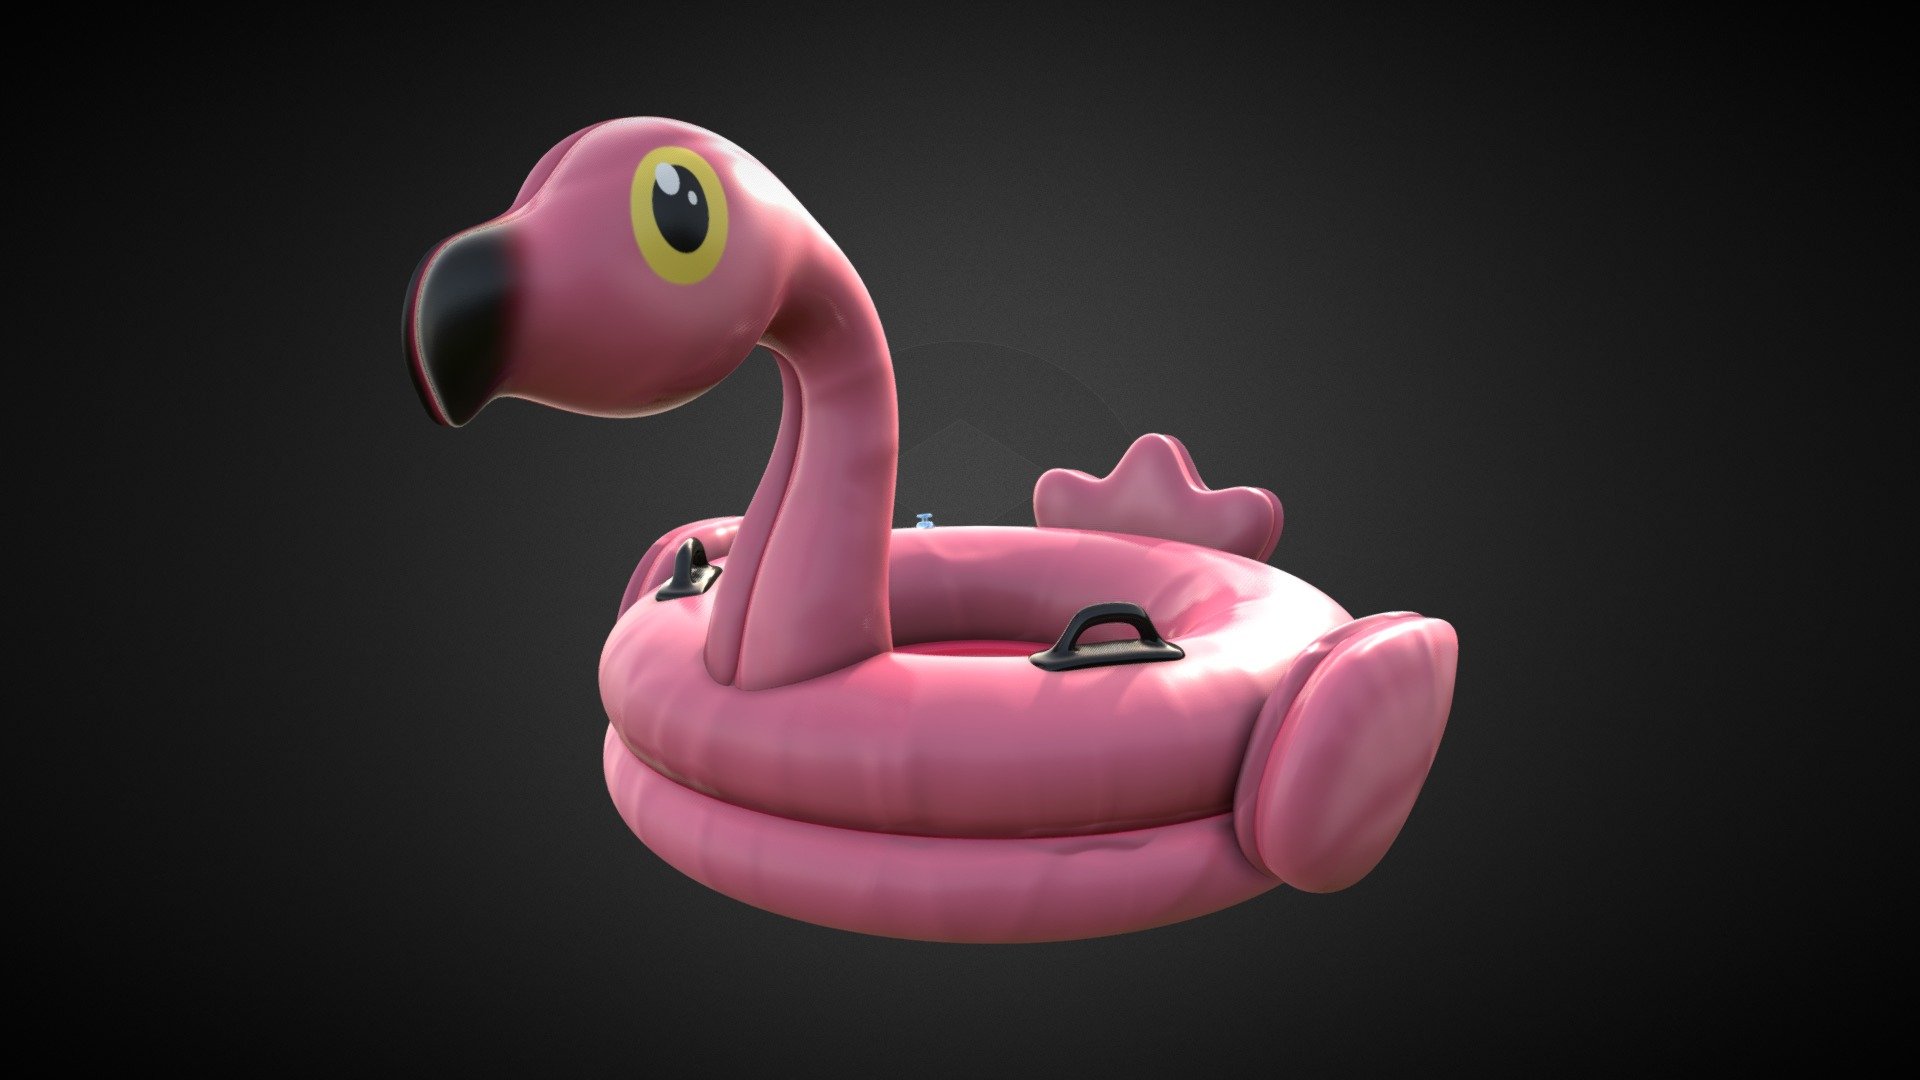 Model of an inflatable flamingo for swimming pools. 
https://www.artstation.com/artwork/oAvREw - Inflatable Flamingo - 3D model by Ivan Bosque (@IvanBosque) 3d model